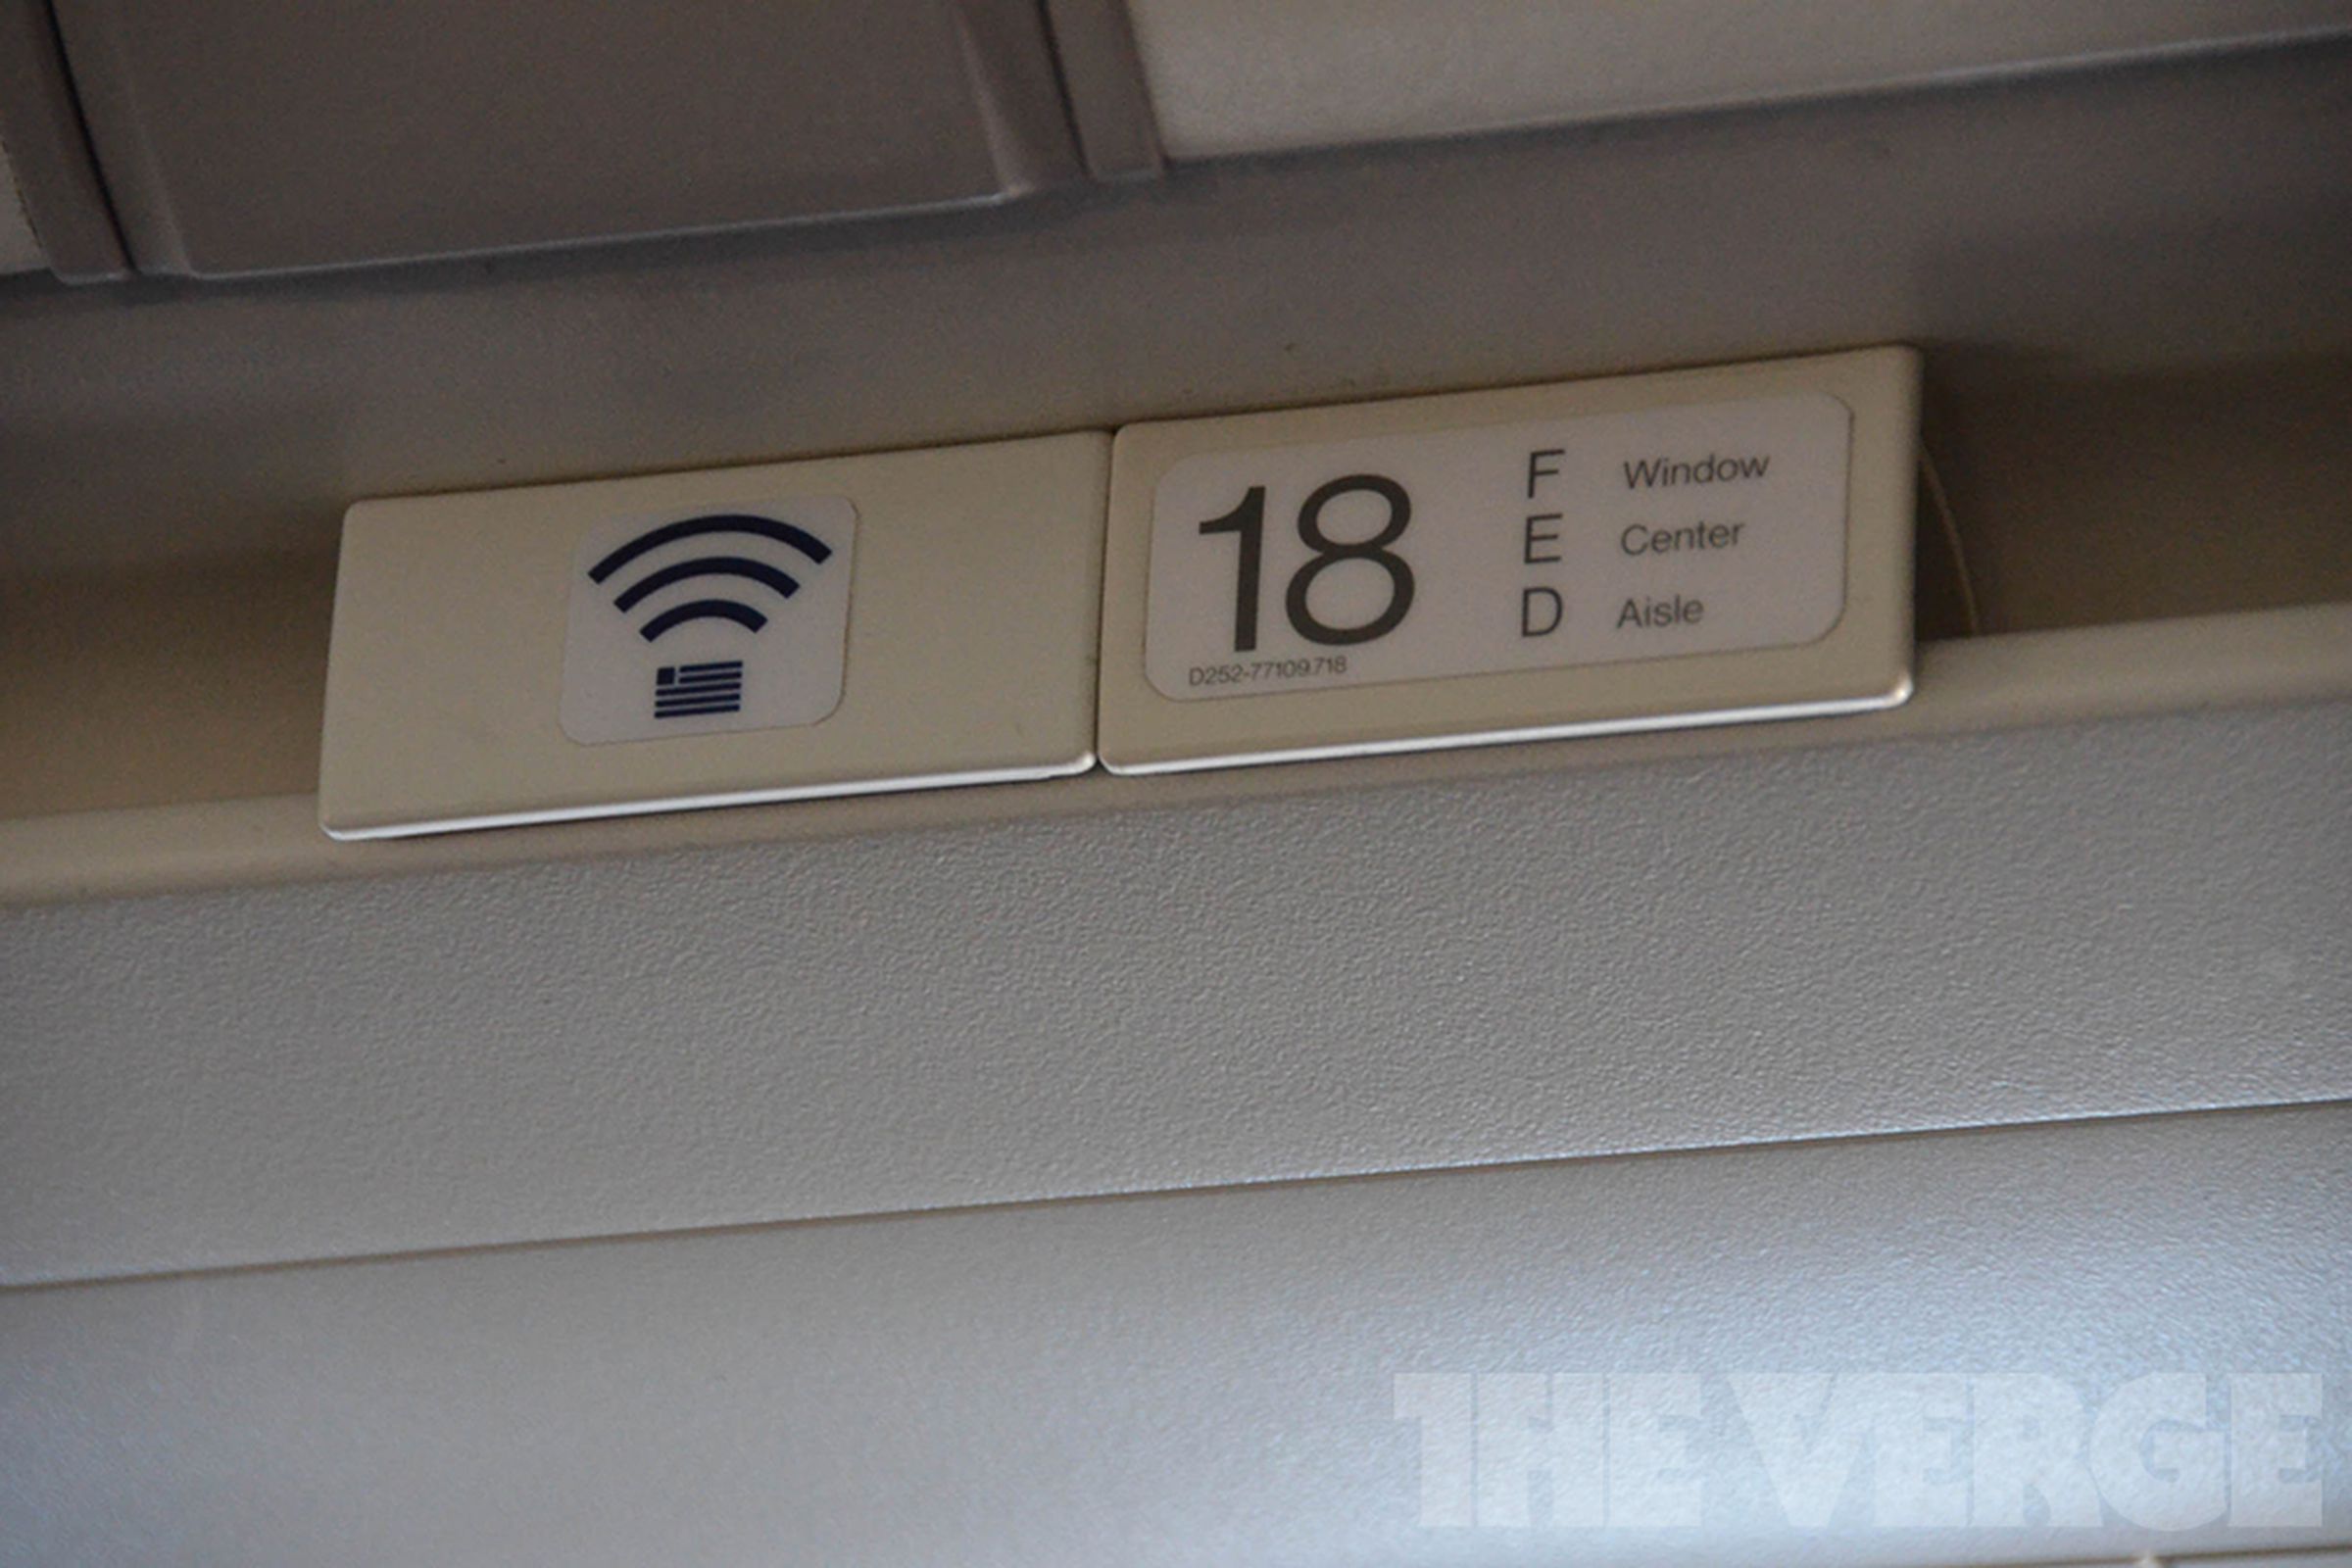 In-flight Wi-Fi (1020)